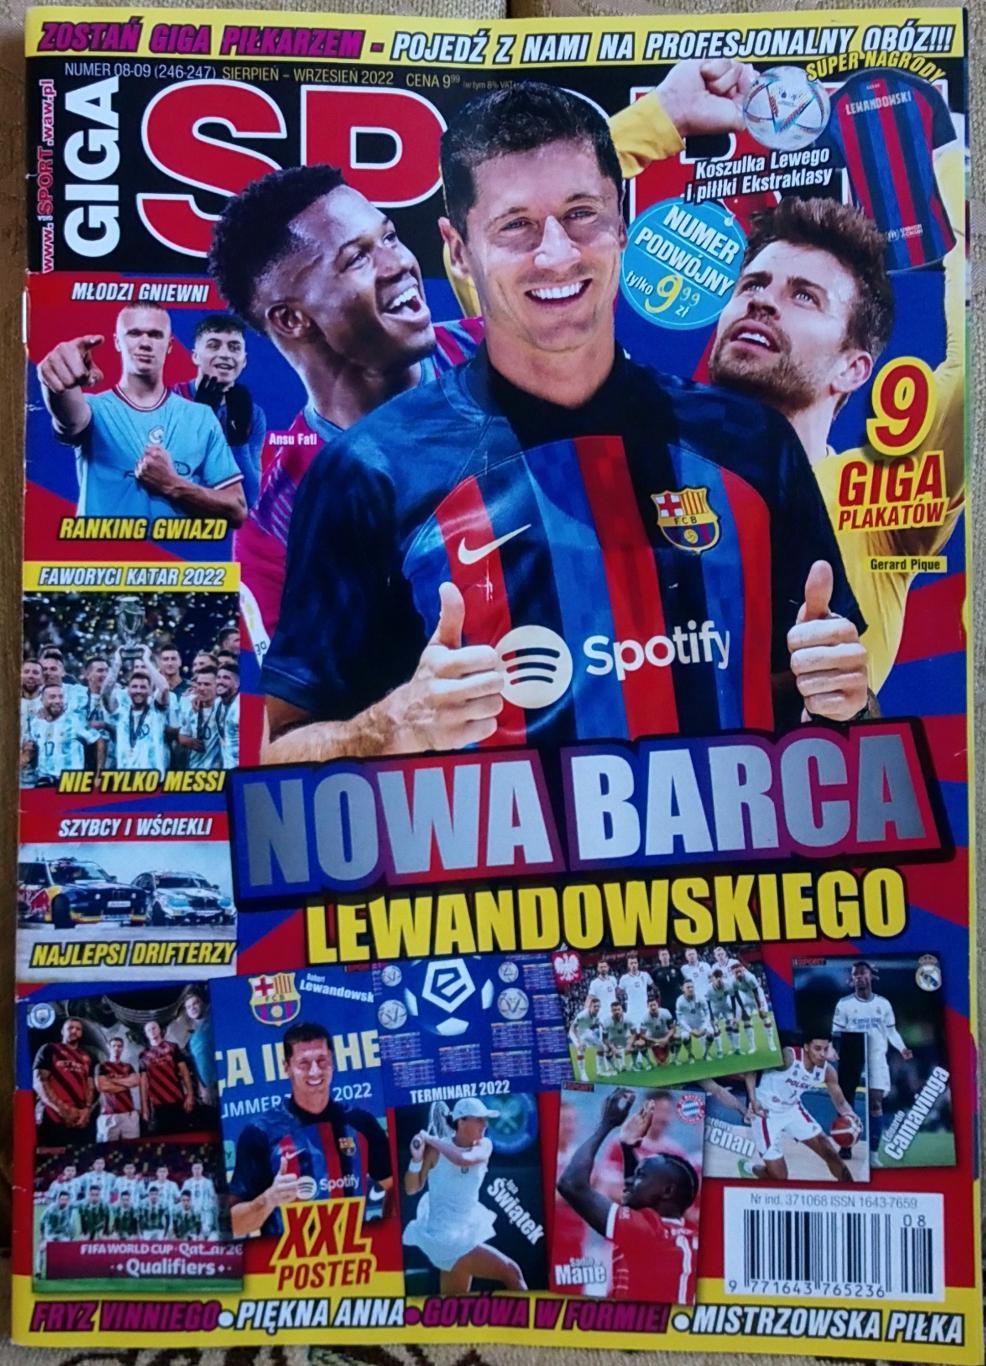 Журнал. Giga Sport N 08-09,серпень-вересень 2022.Постери.